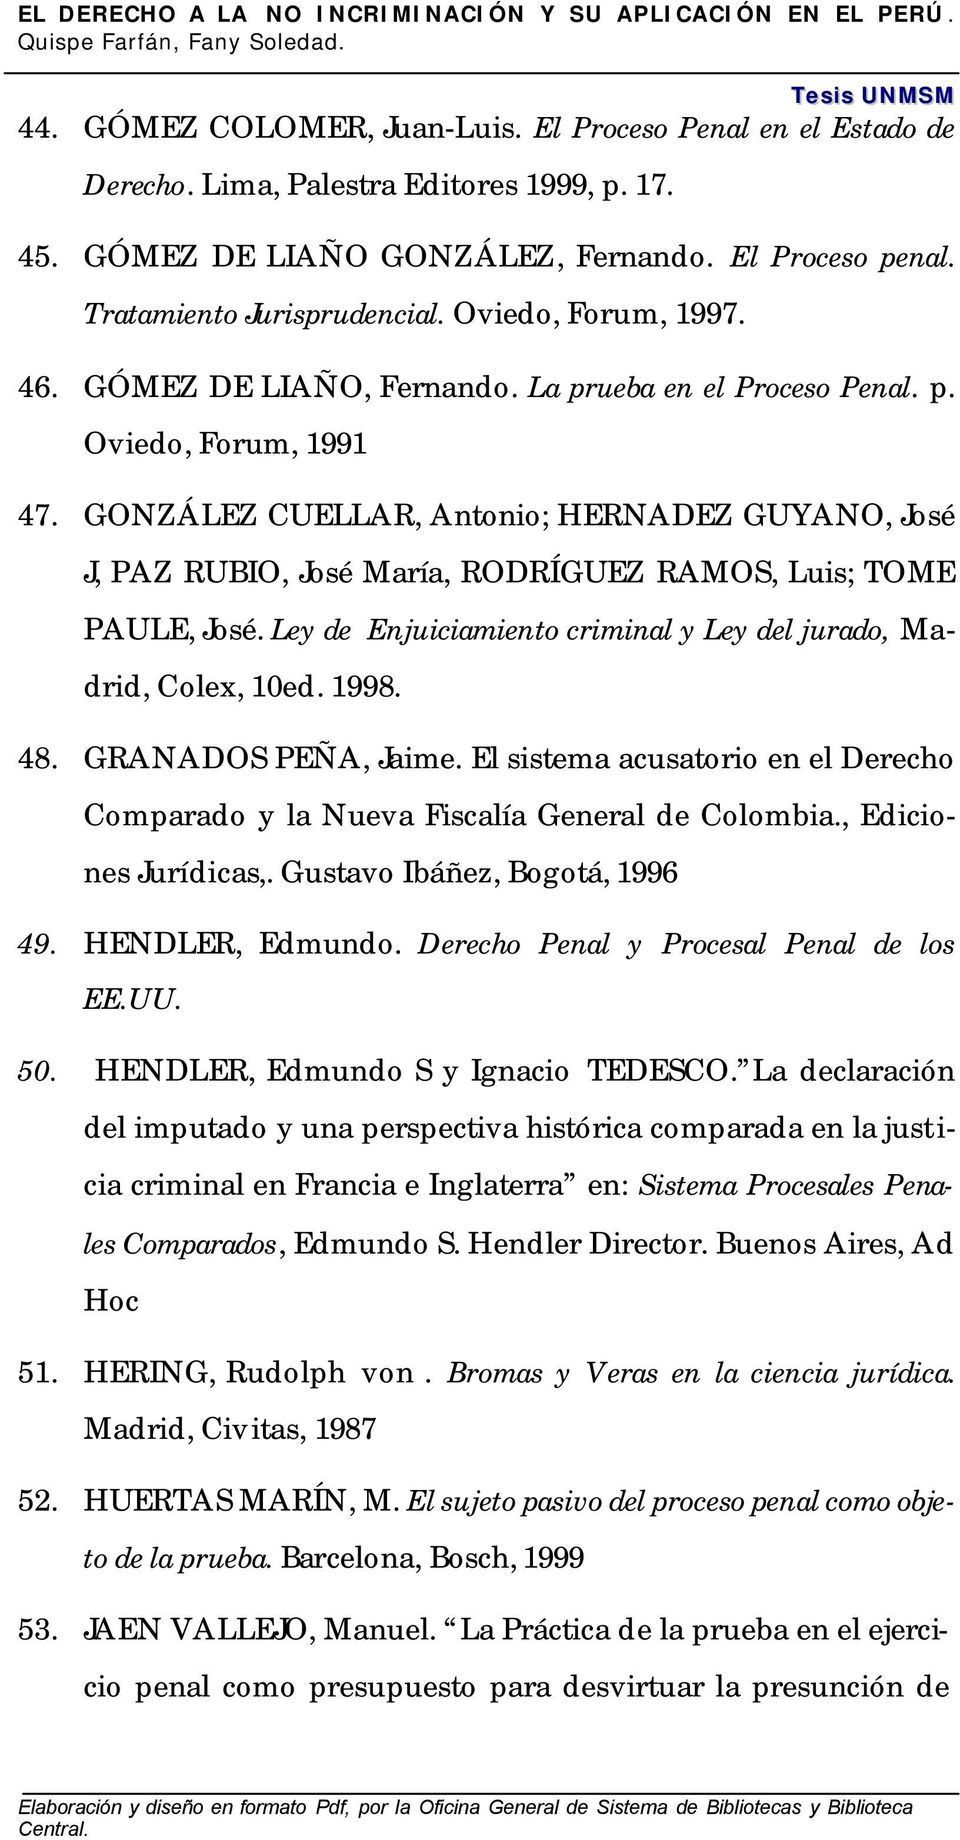 GONZÁLEZ CUELLAR, Antonio; HERNADEZ GUYANO, José J, PAZ RUBIO, José María, RODRÍGUEZ RAMOS, Luis; TOME PAULE, José. Ley de Enjuiciamiento criminal y Ley del jurado, Madrid, Colex, 10ed. 1998. 48.